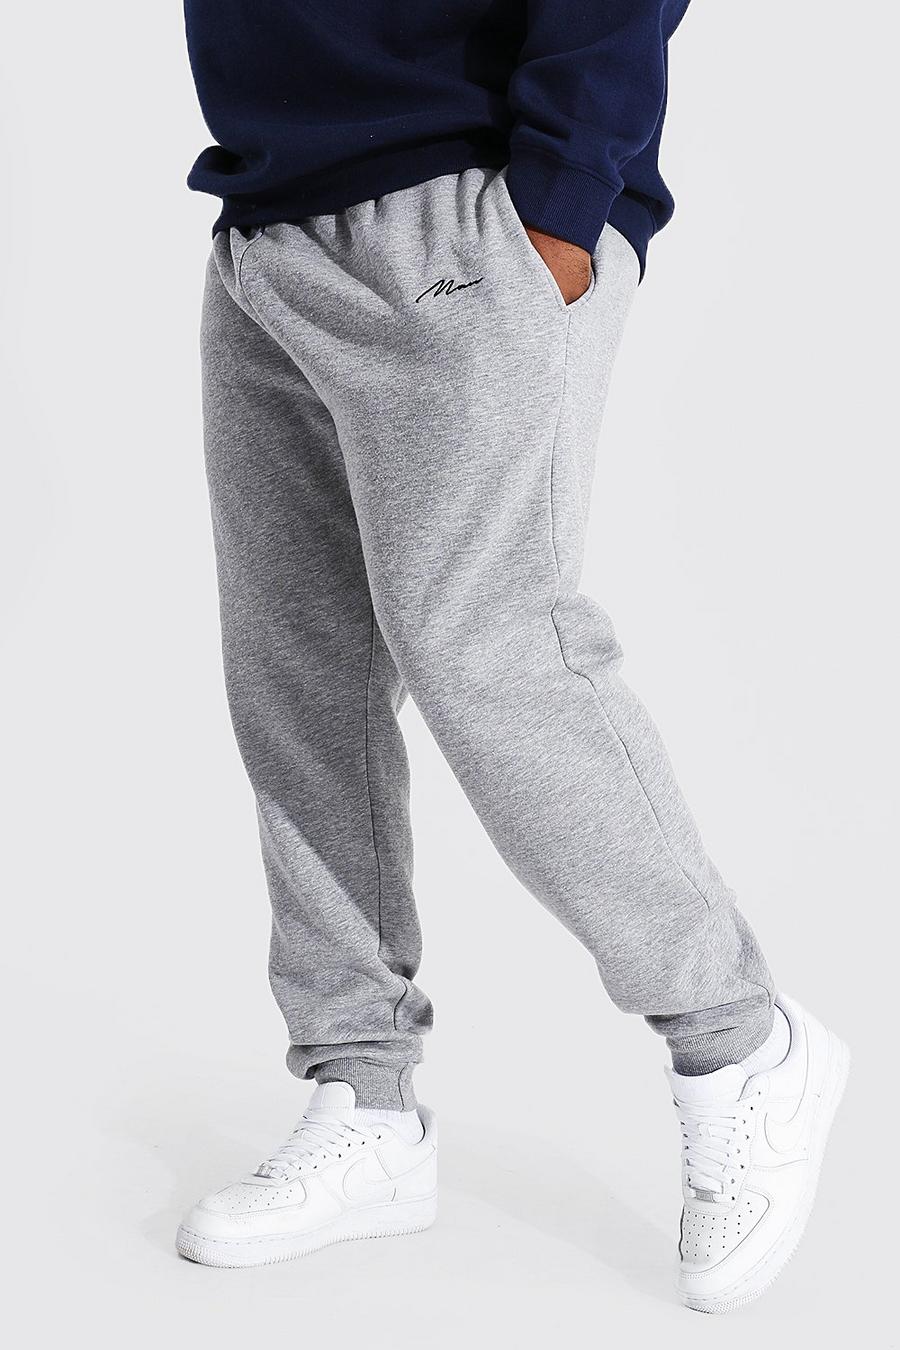 Pantalón deportivo Plus reciclado con letras MAN ajustado, Grey marl grigio